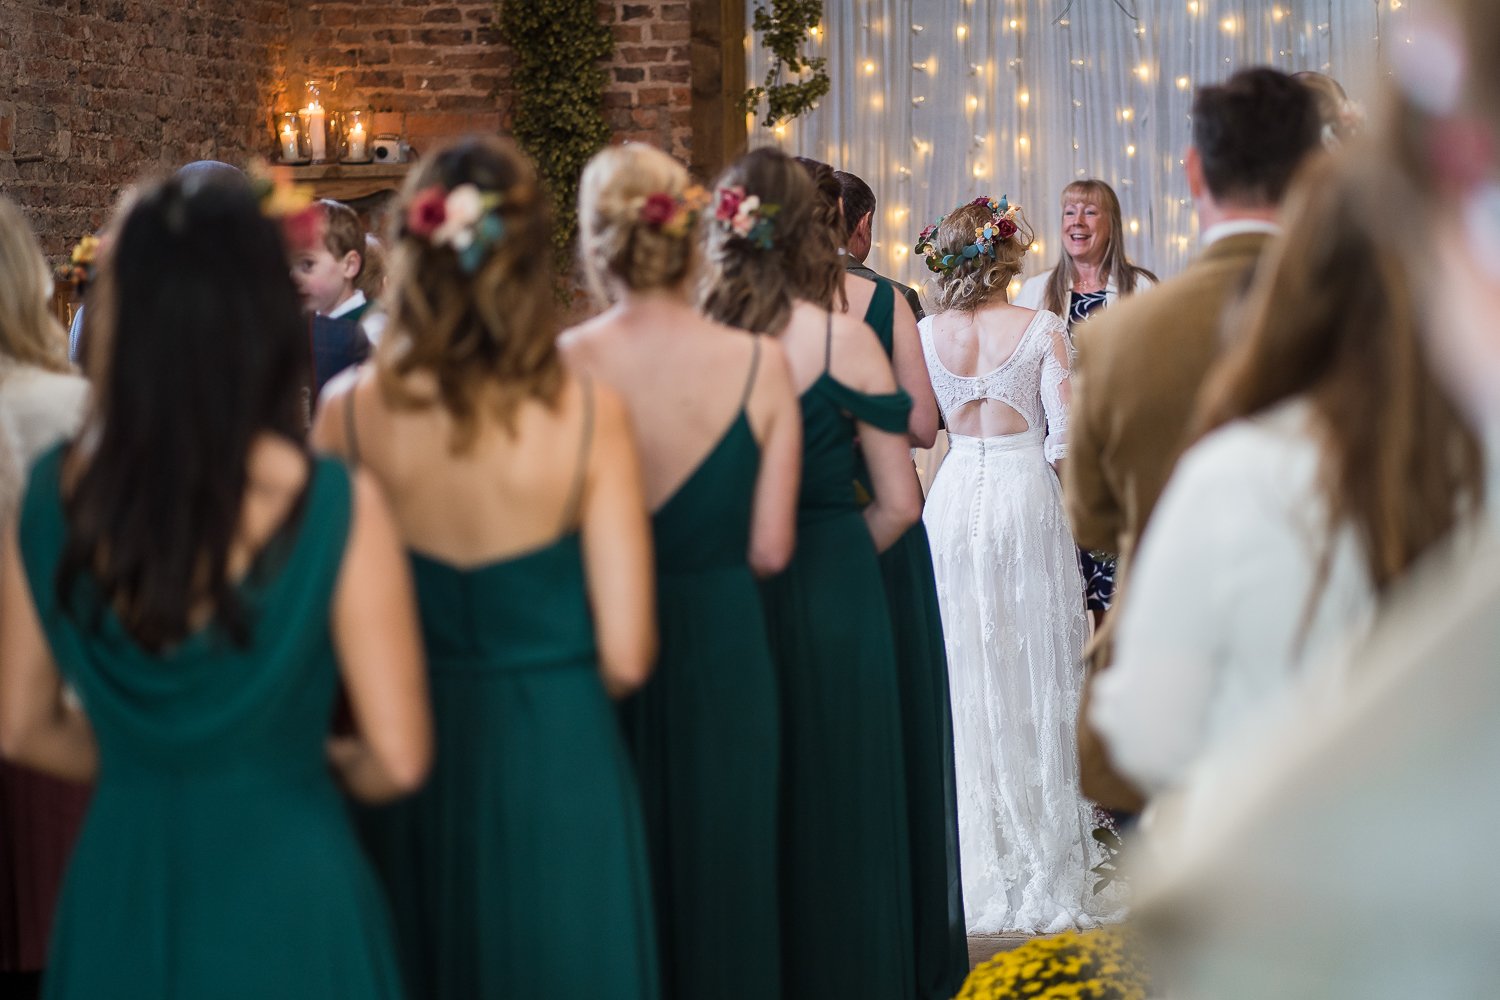 Bridesmaids walk down aisle at rustic barn wedding